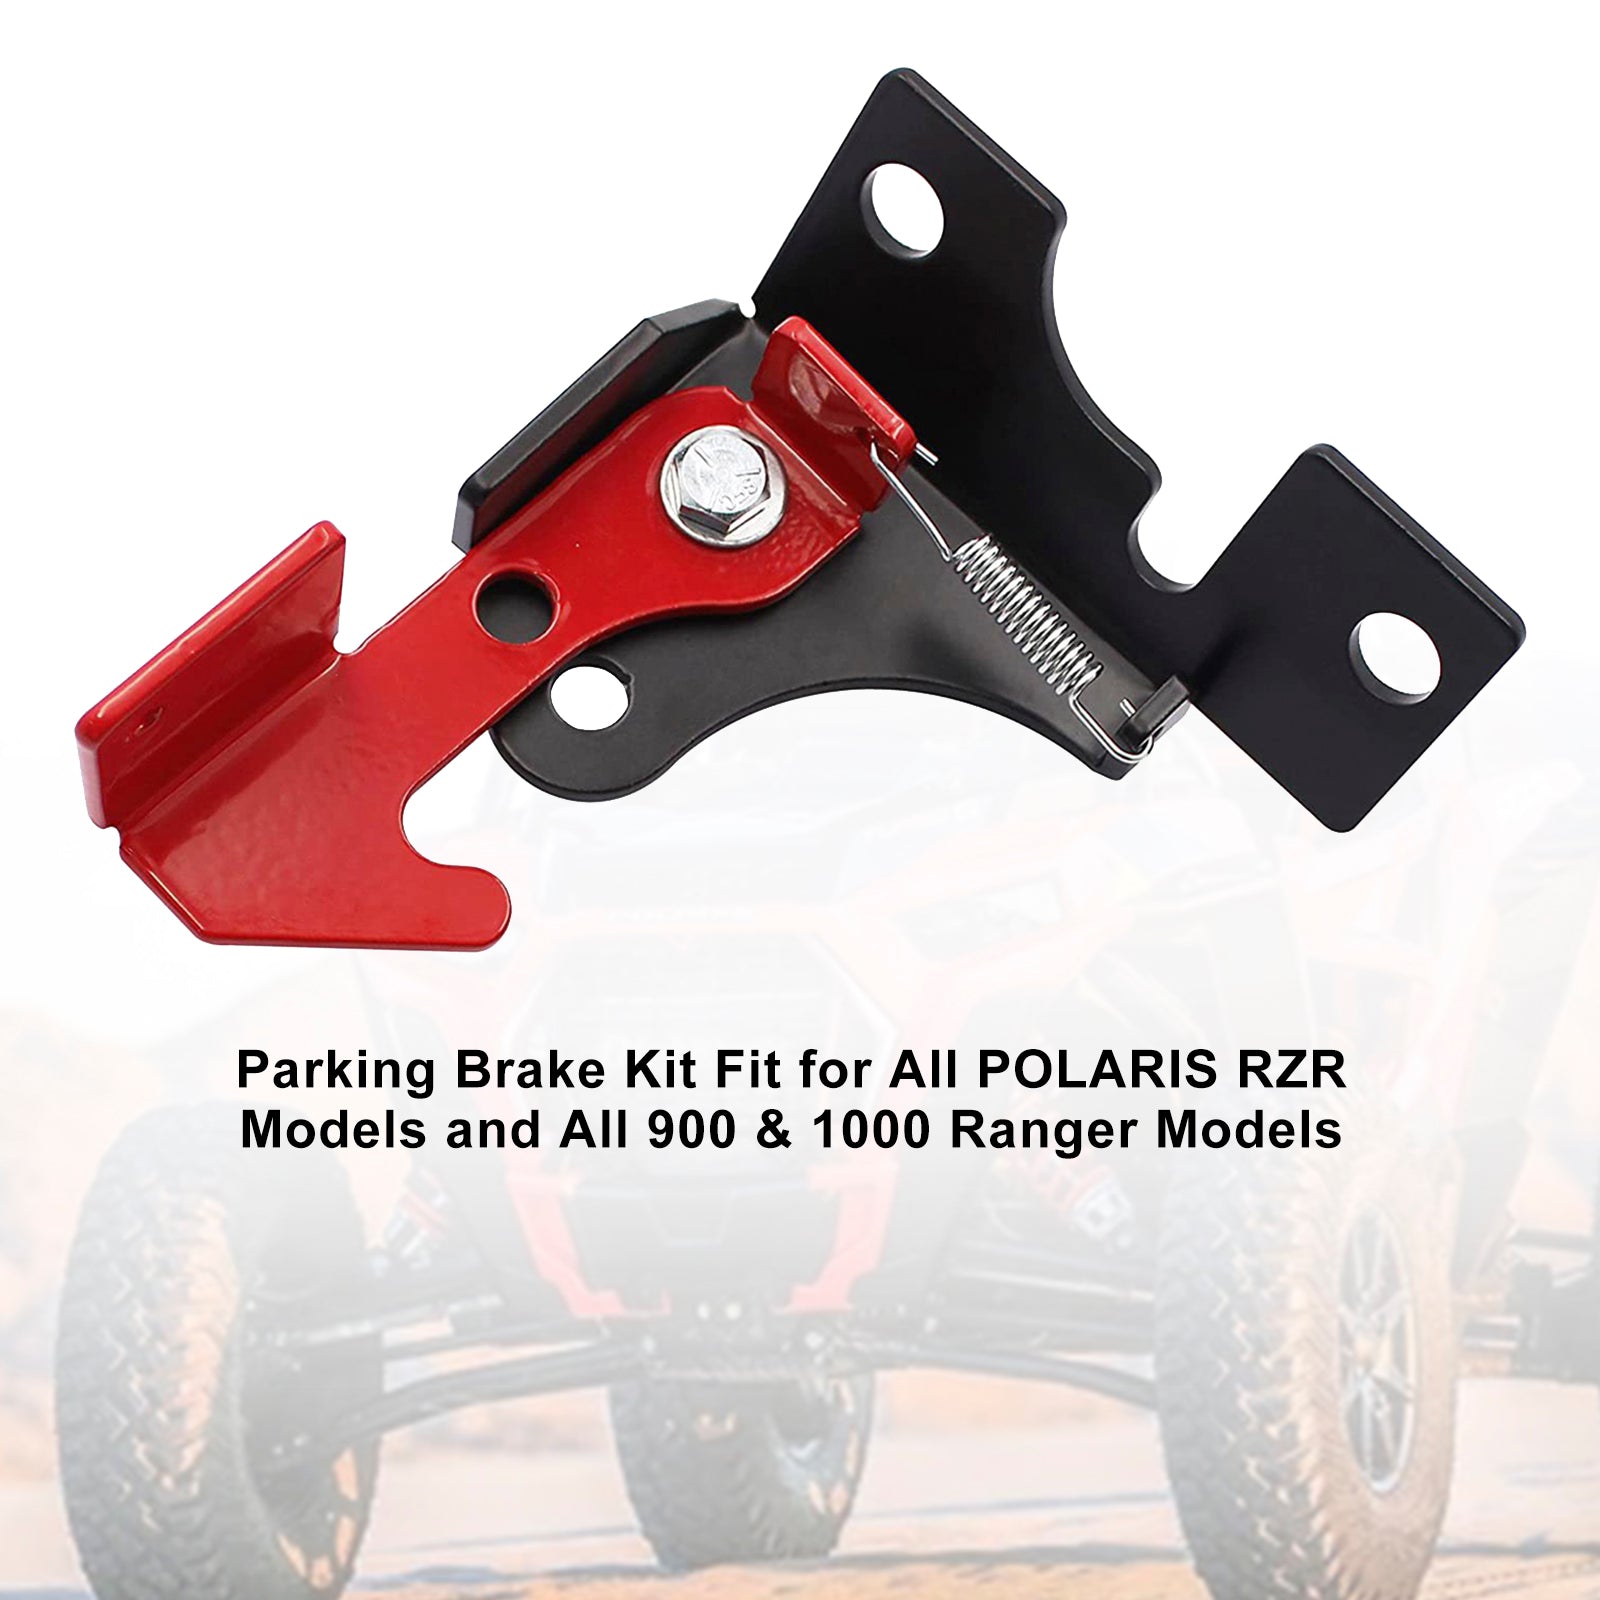 Assembly Parking Brake Kit Fits For Polaris Rzr 800 900 1000 All Ranger Model